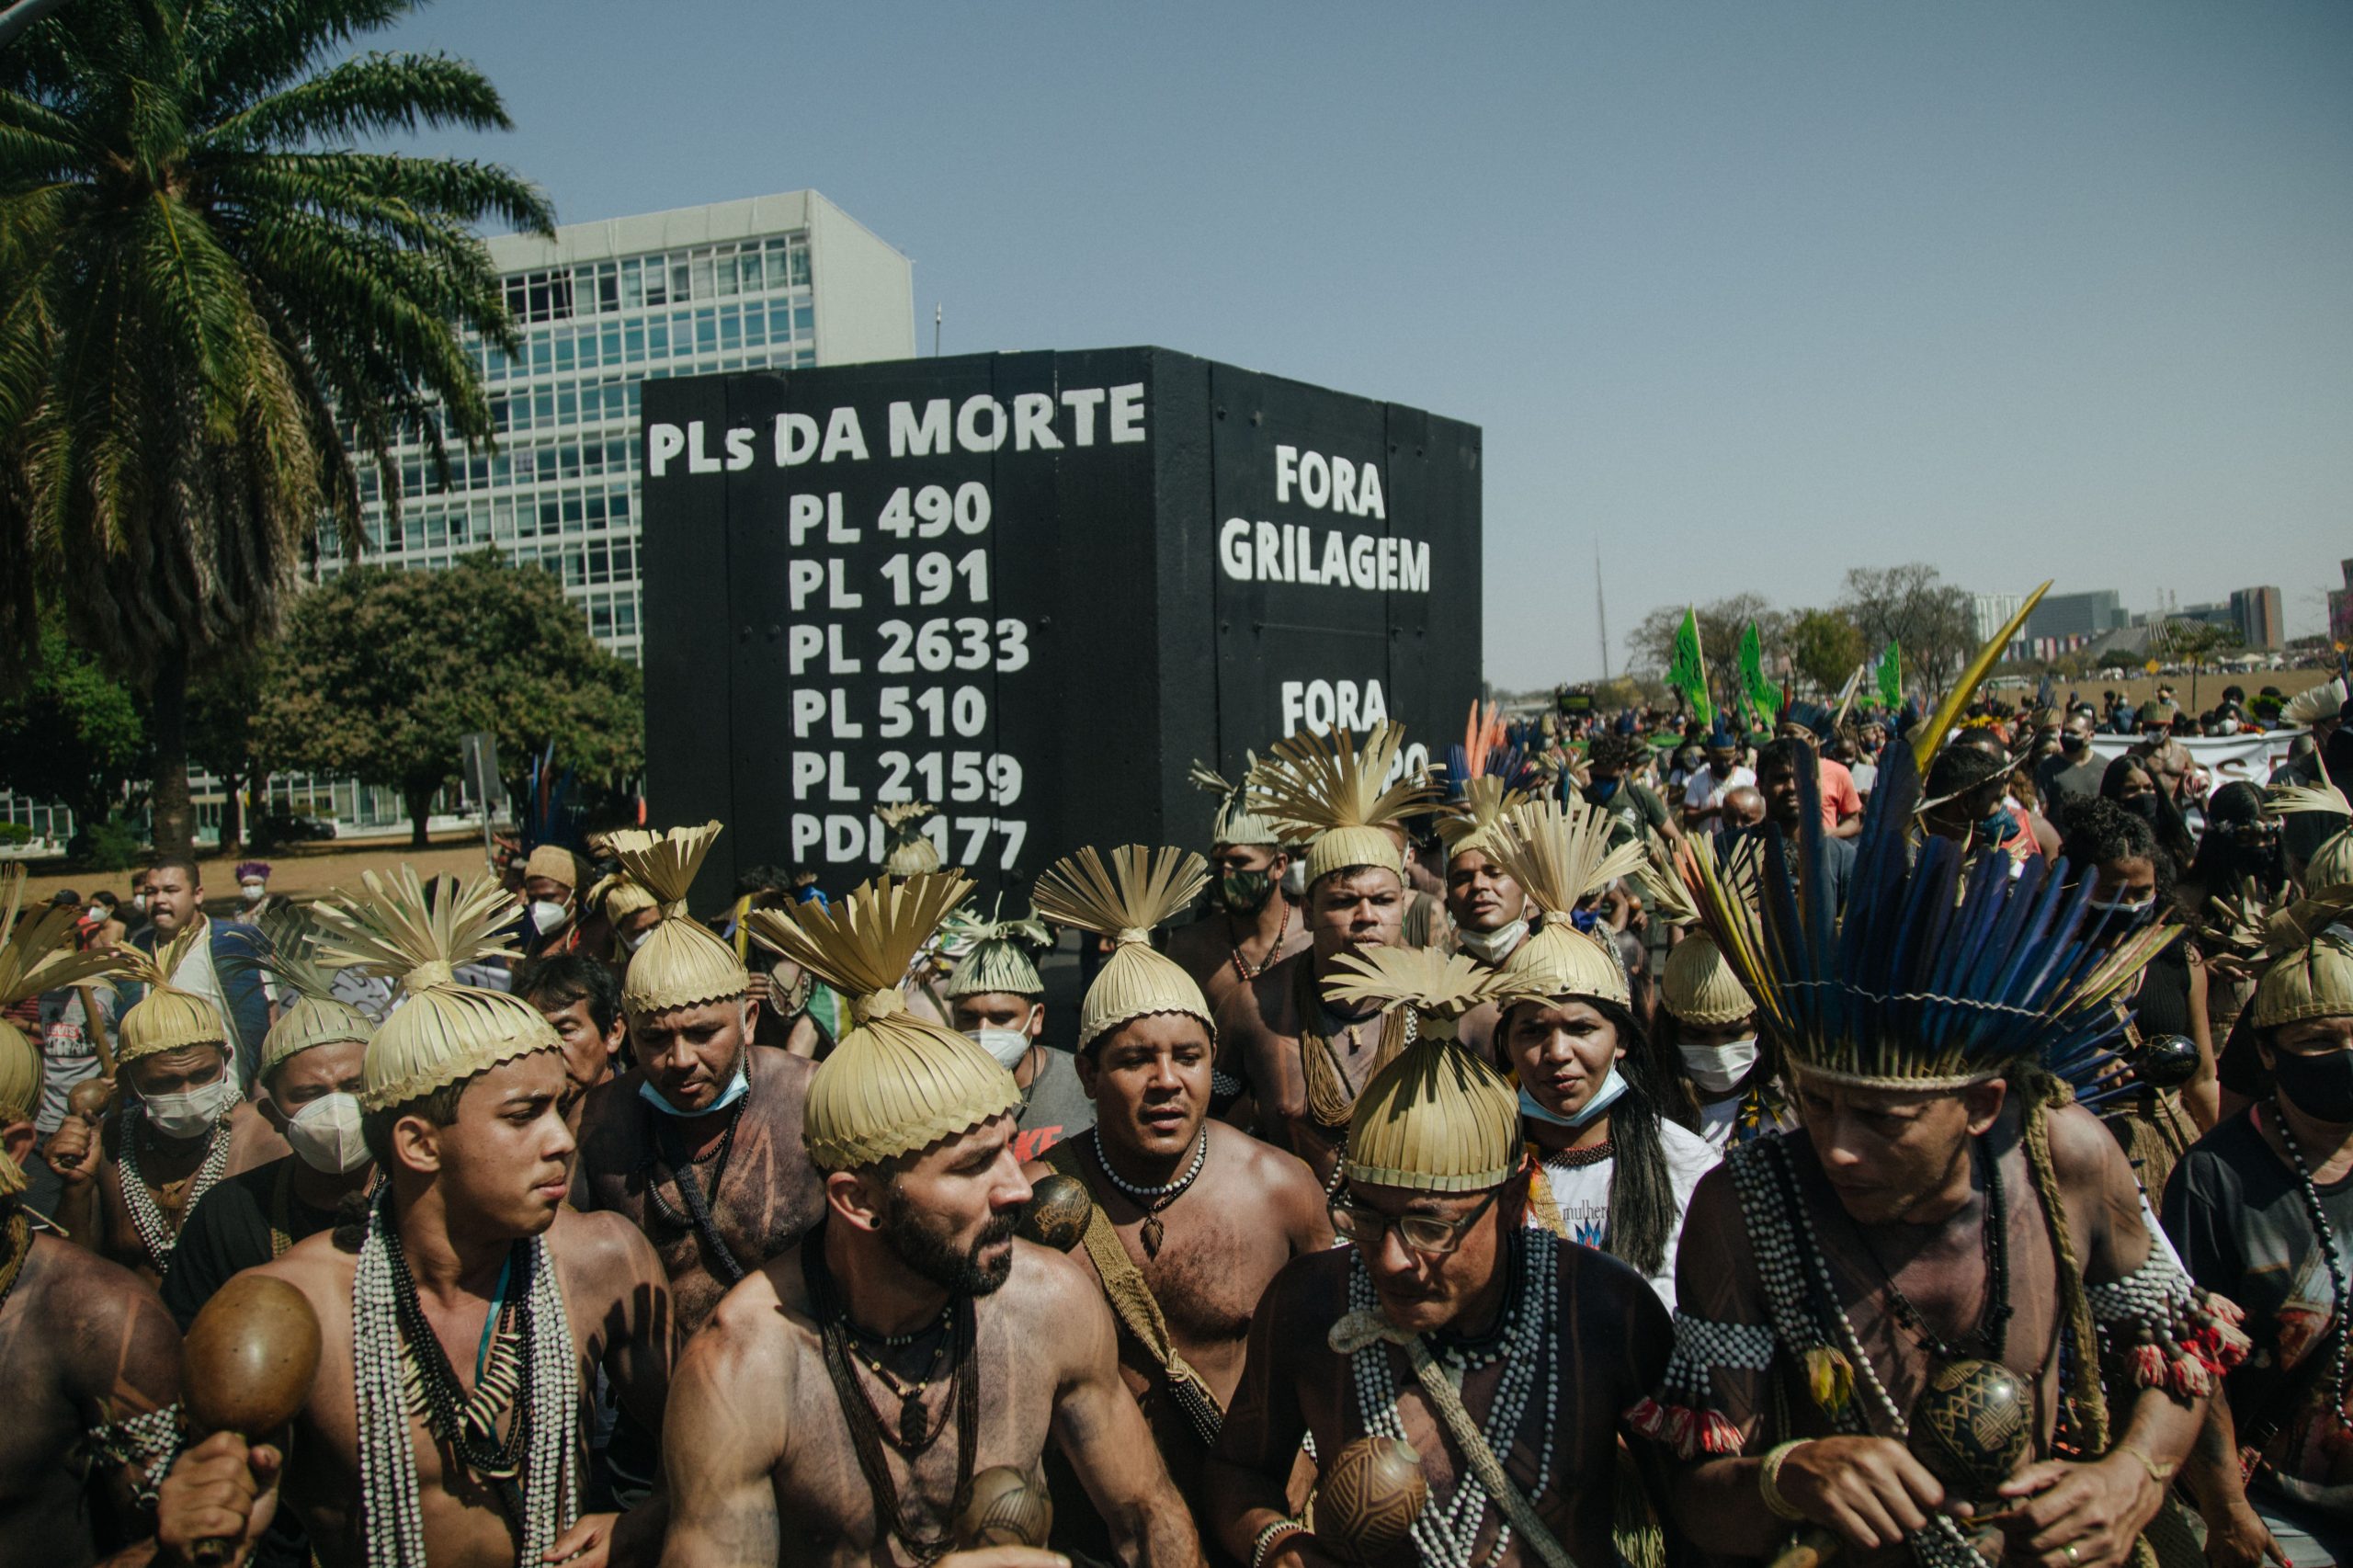 Indígenas, em trajes típicos, em um protesto em Brasília.